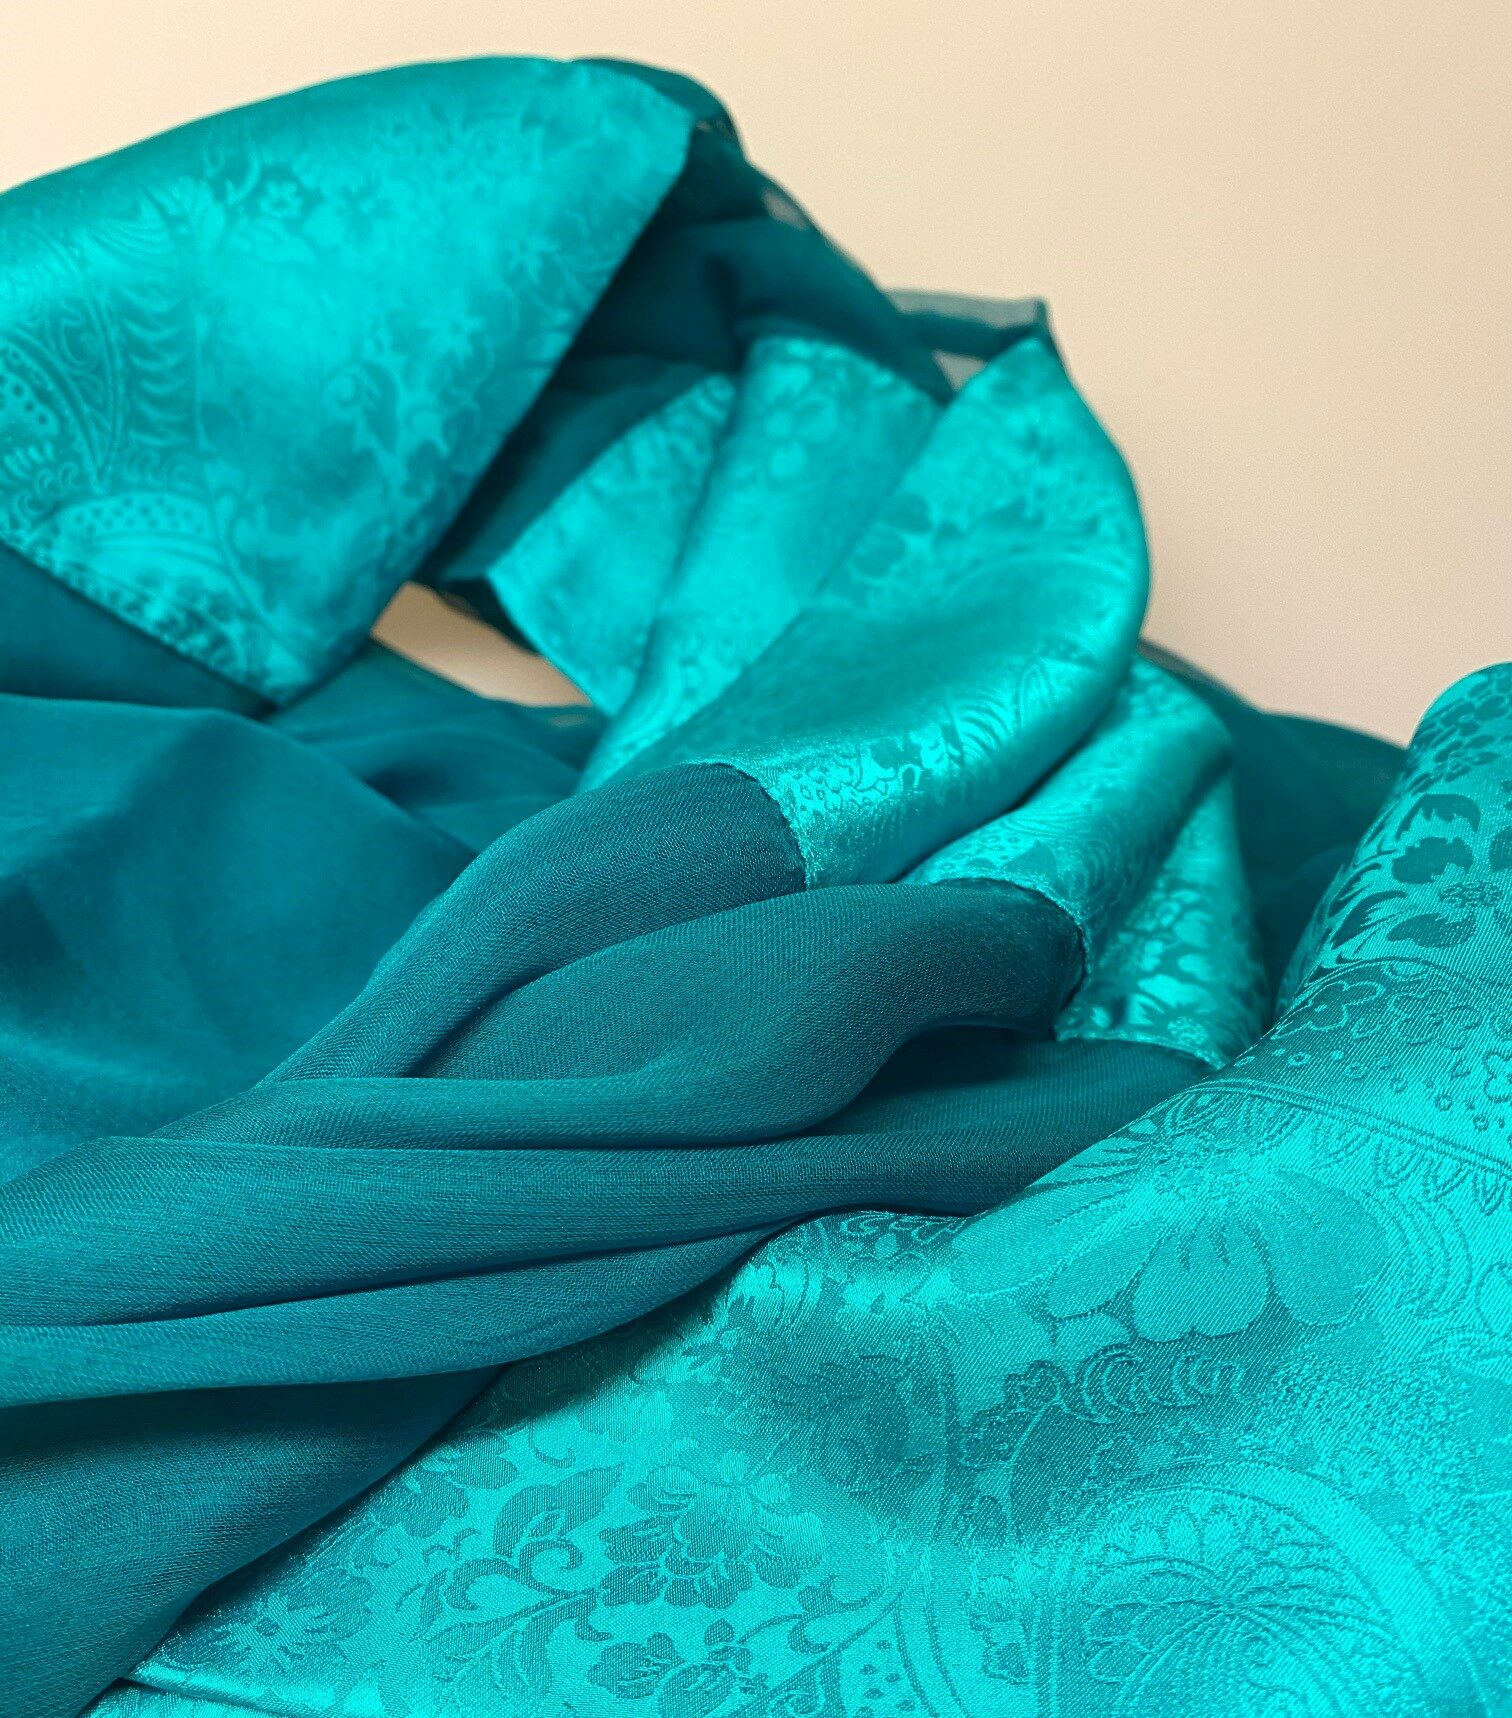 Dobbelt Silkechiffon Tørklæde med Jaquard - Smaragdgrønt, dobbelt, to lag, silke, chiffon, let, ensfarvet, elegant, over skuldrene, stola, sjal, fest, festlig, grønt, pine, flot, billigt, tilbud, særligt, gave, gaveide, biti, ribe